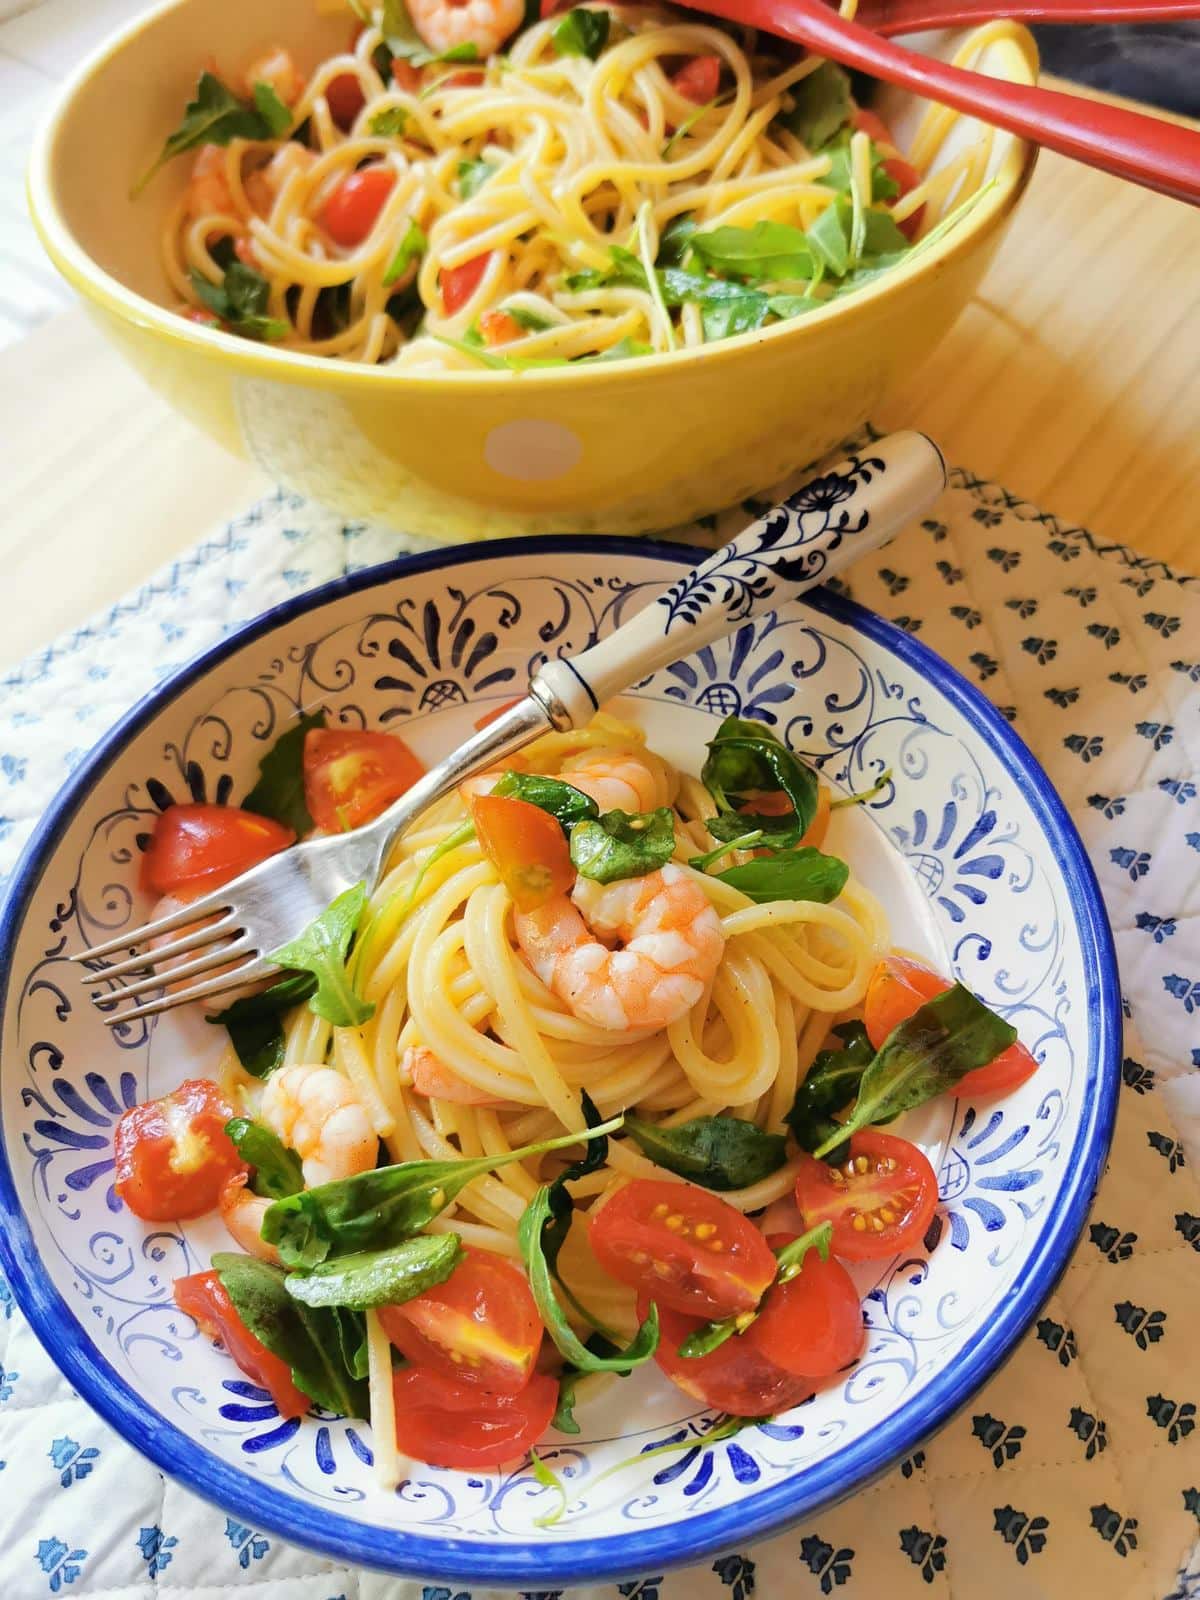 Italian cold spaghetti salad with shrimp